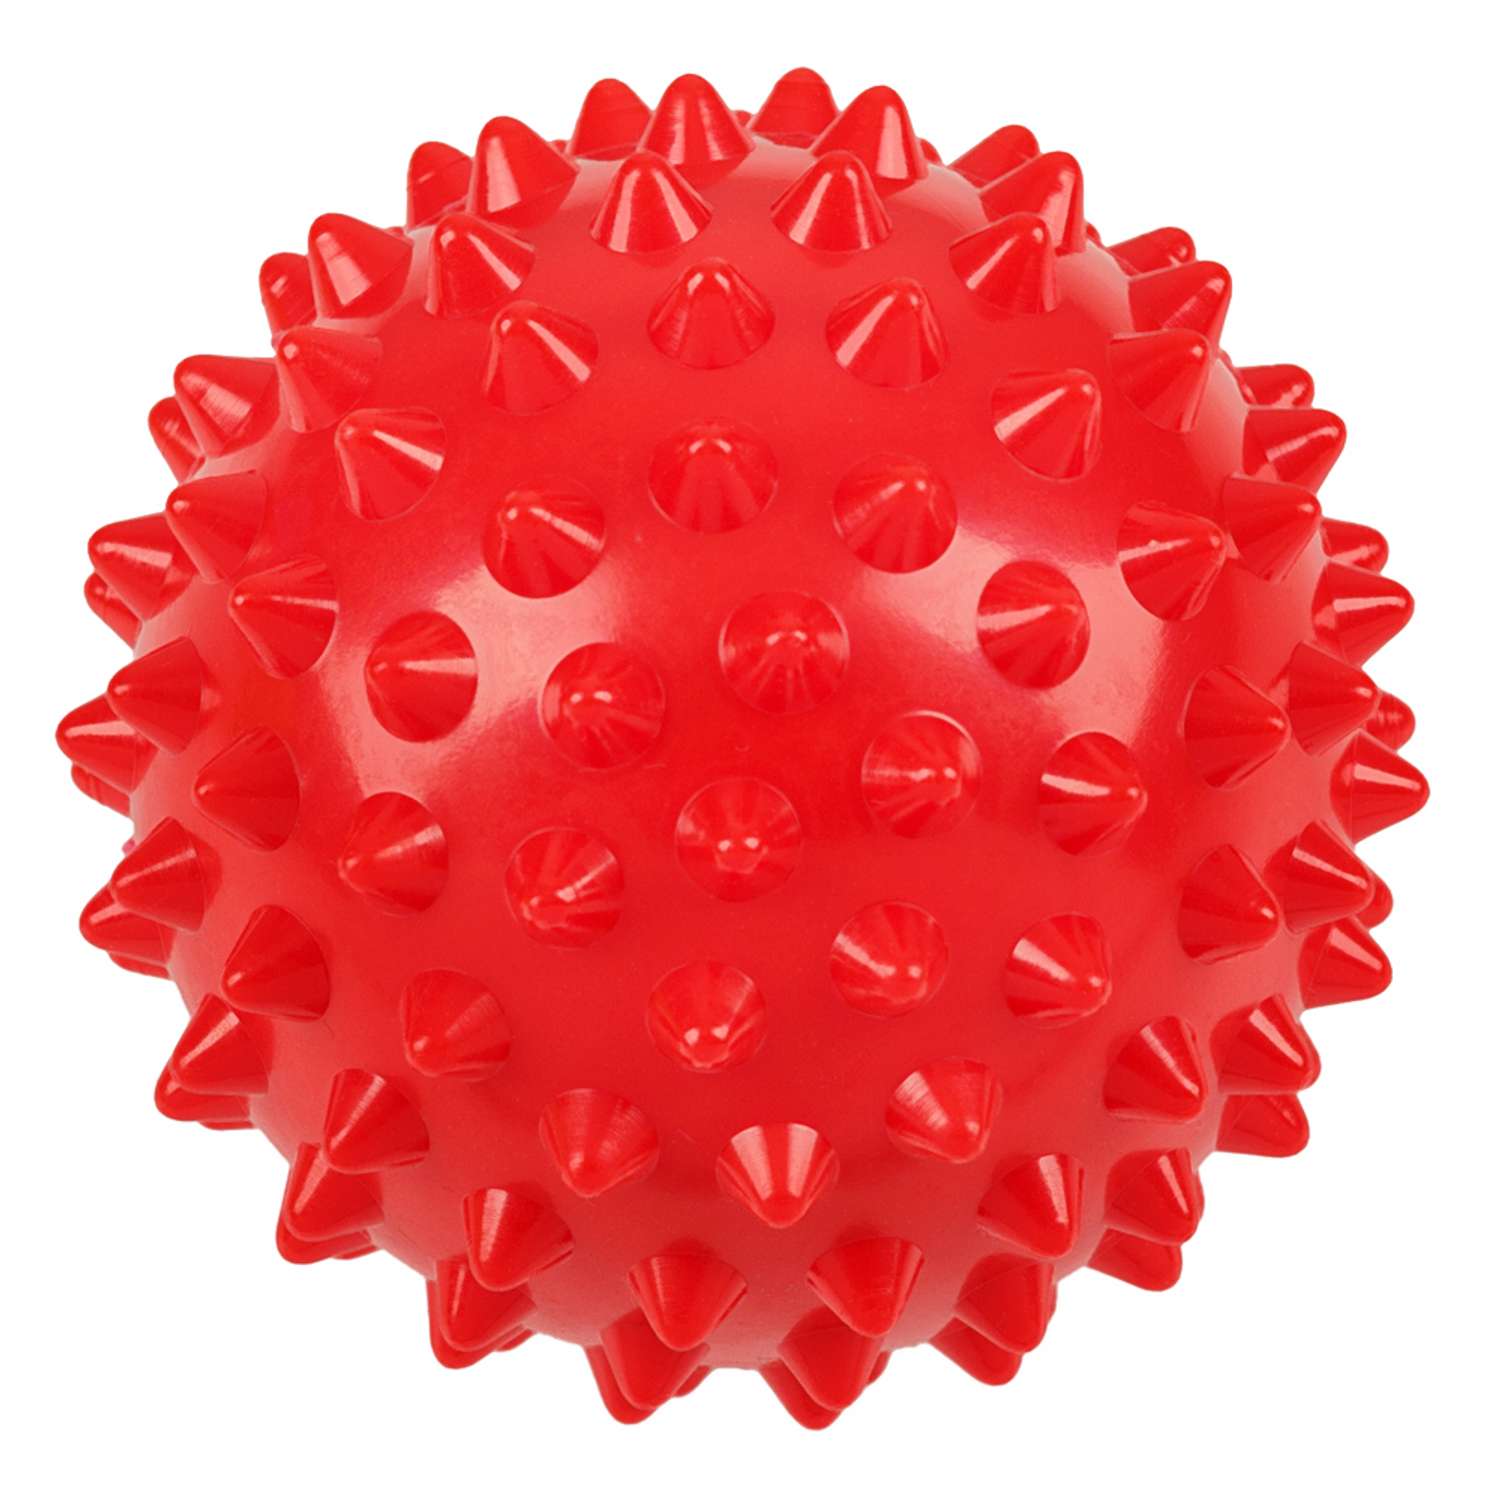 Комплект из 3 массажных мячей STRONG BODY жестких с игольчатой поверхностью: 6.5 см 7.5 см 8.5 см - фото 6